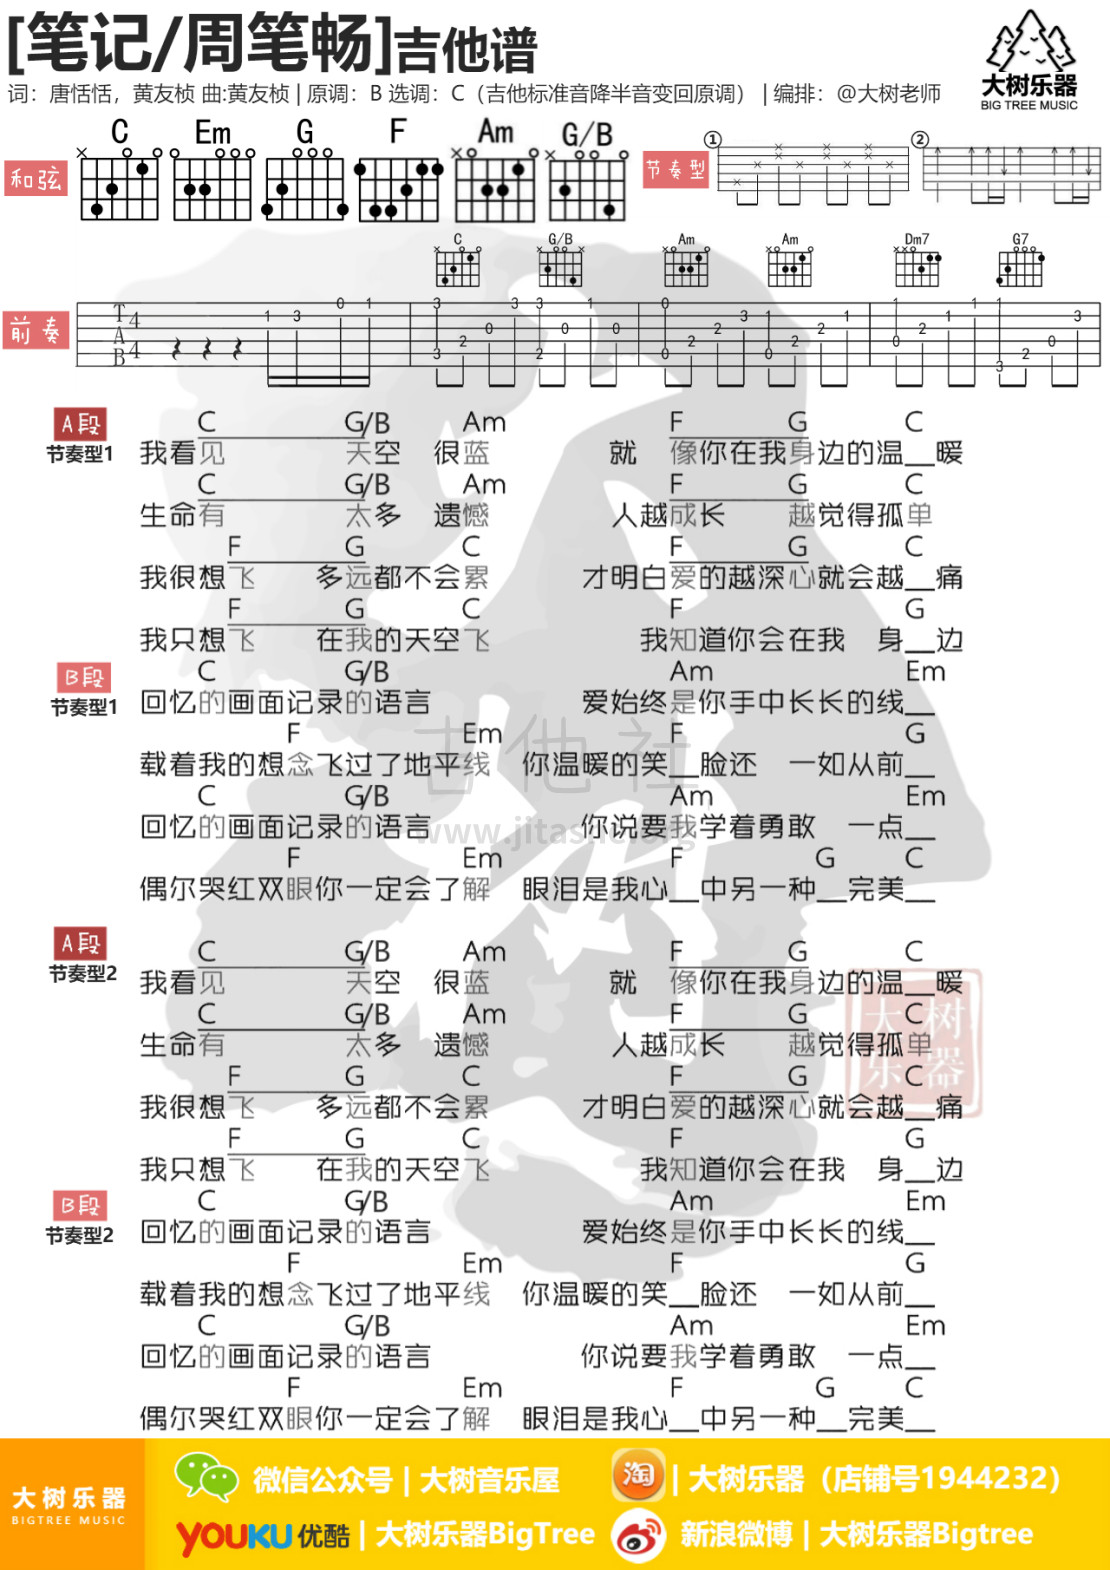 打印:笔记(大树乐器-大树音乐)吉他谱_周笔畅(BiBi Chou)_模板_meitu_3_meitu_5.jpg